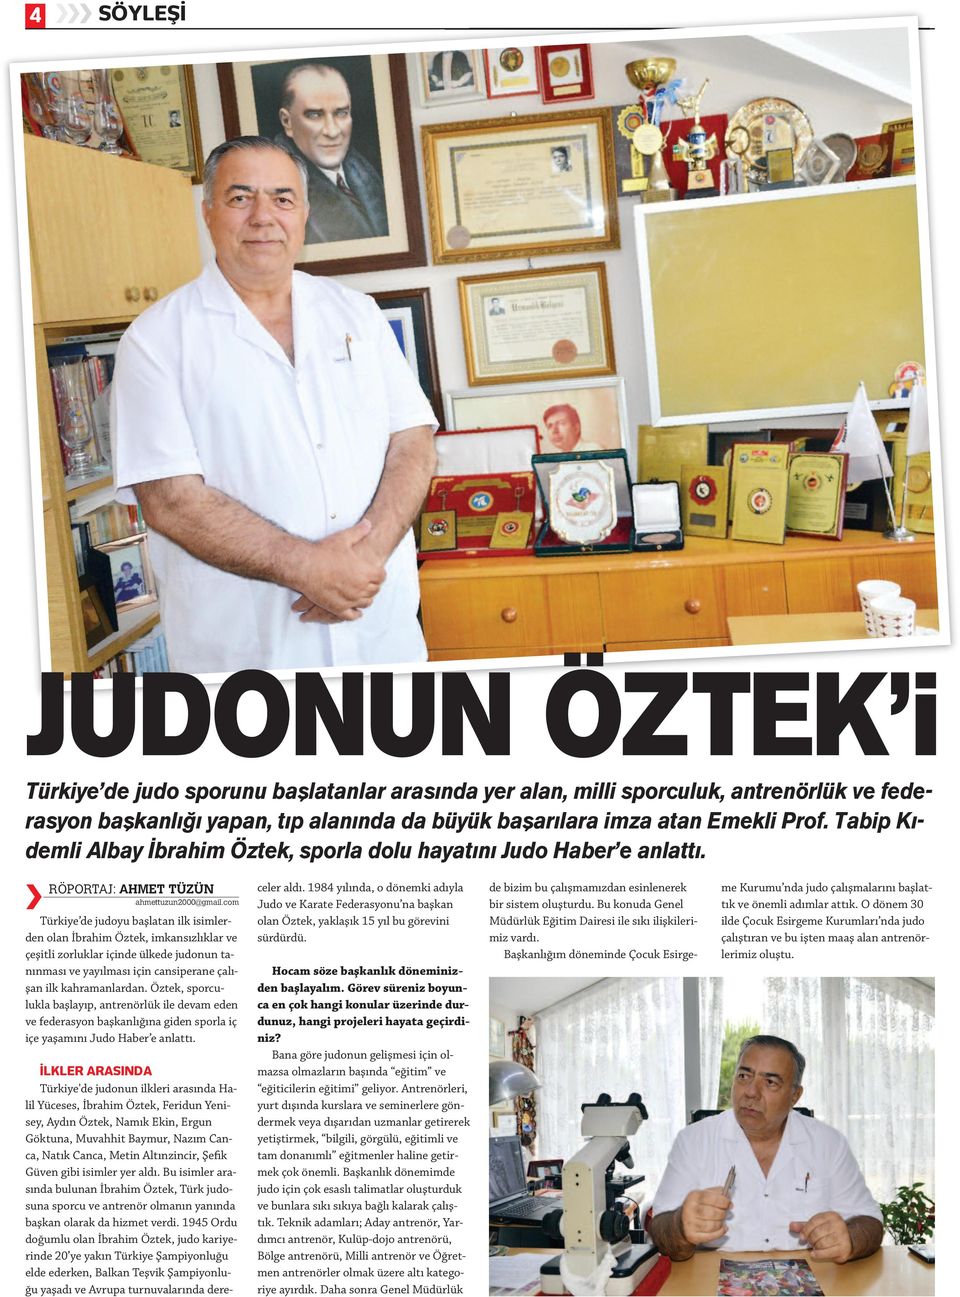 com Türkiye de judoyu başlatan ilk isimlerden olan İbrahim Öztek, imkansızlıklar ve çeşitli zorluklar içinde ülkede judonun tanınması ve yayılması için cansiperane çalışan ilk kahramanlardan.